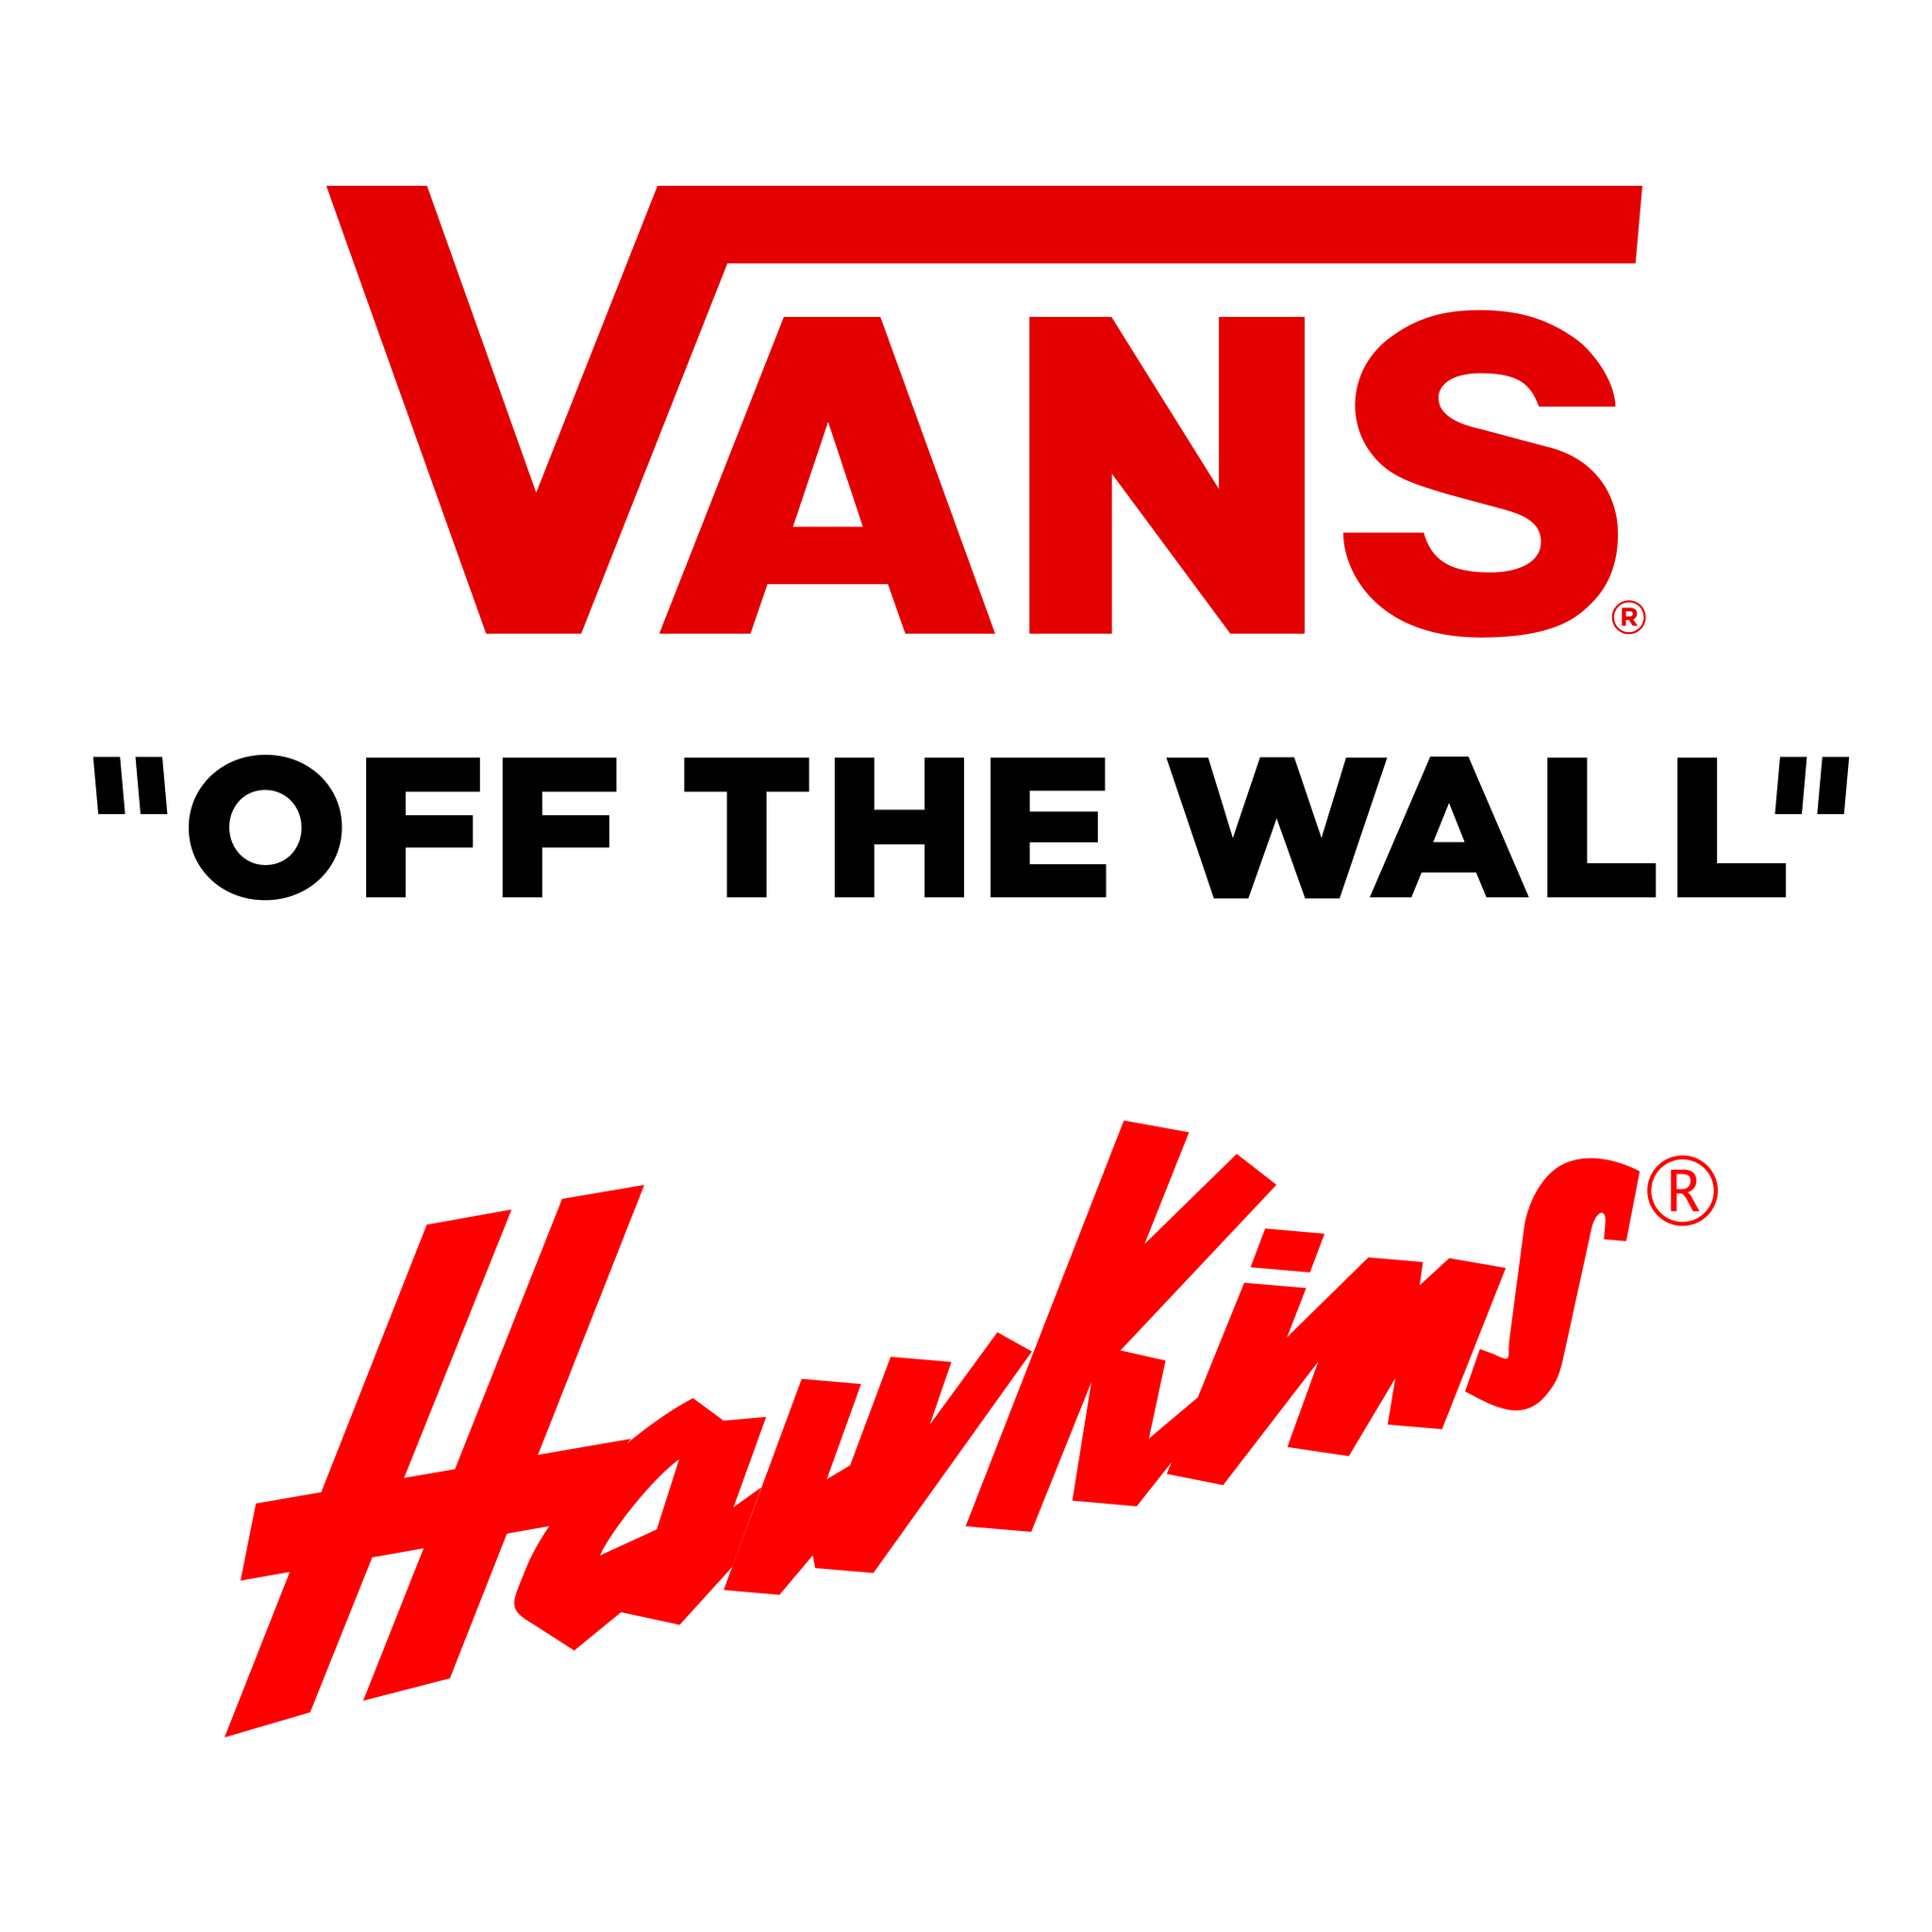 Vans/Hawkins